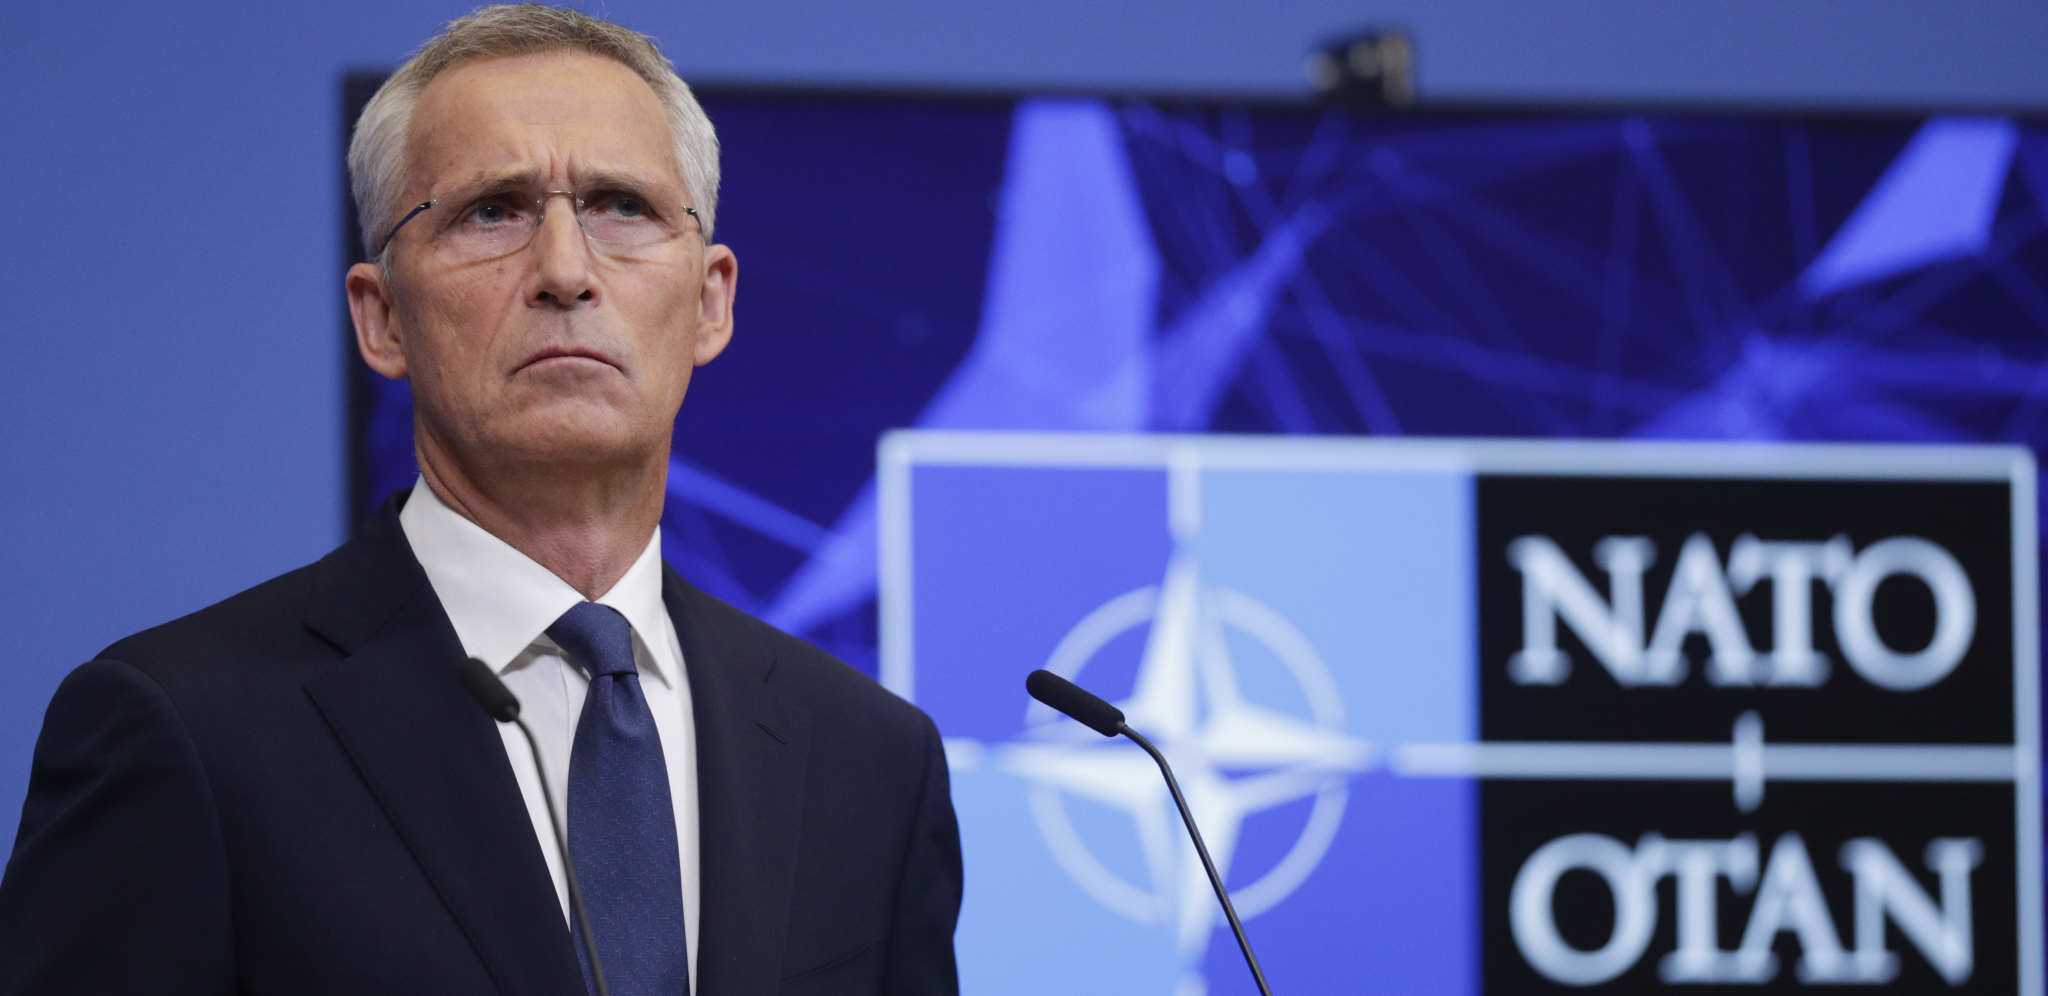 PUTIN PREKINUO OBRAĆANJE ŠEFA NATO! Svi su ostali u šoku kada se pojavio ruski lider (VIDEO)